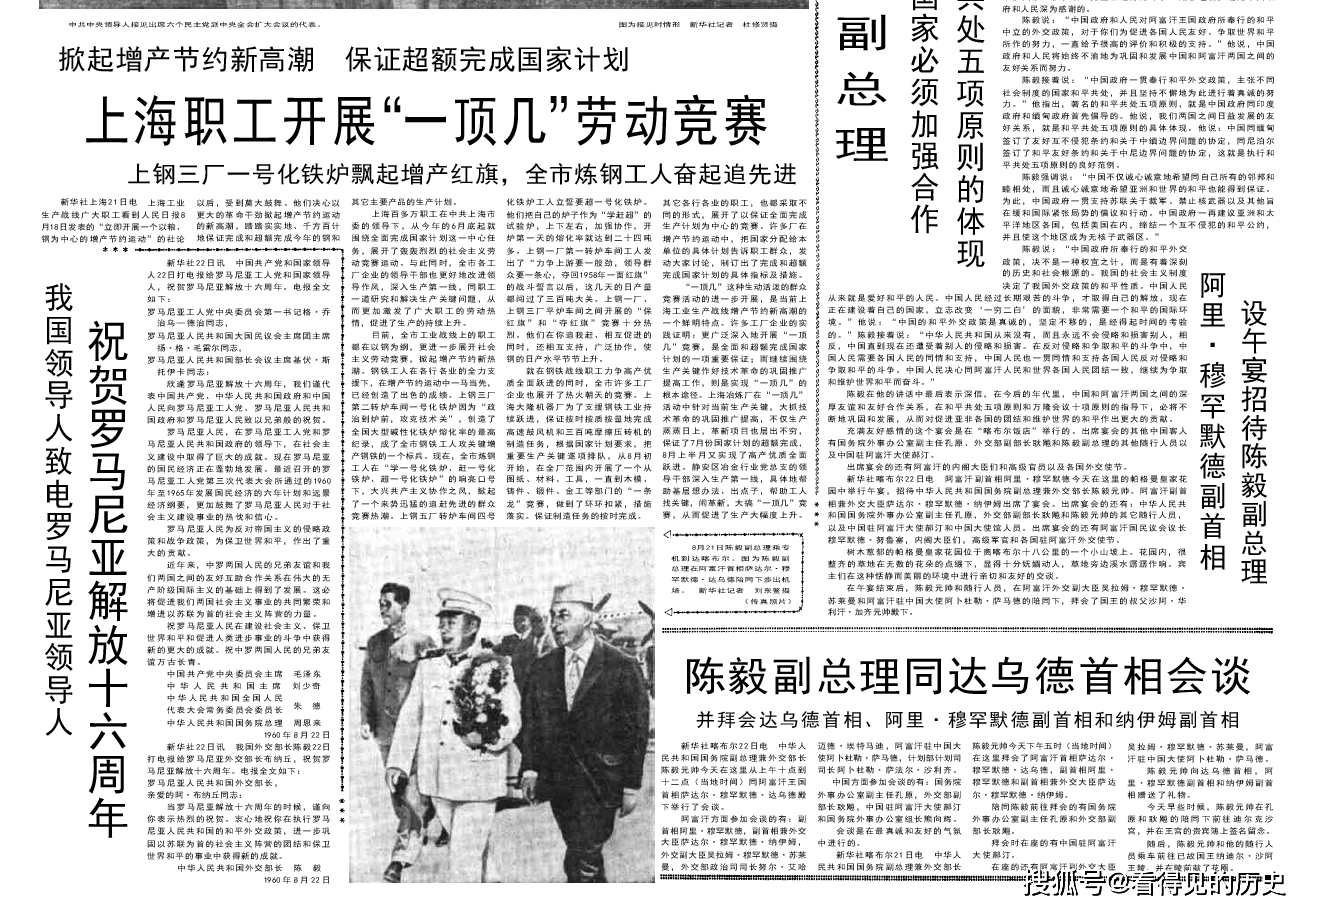 各行各业都来支援农业1960年8月23日《人民日报》_手机搜狐网